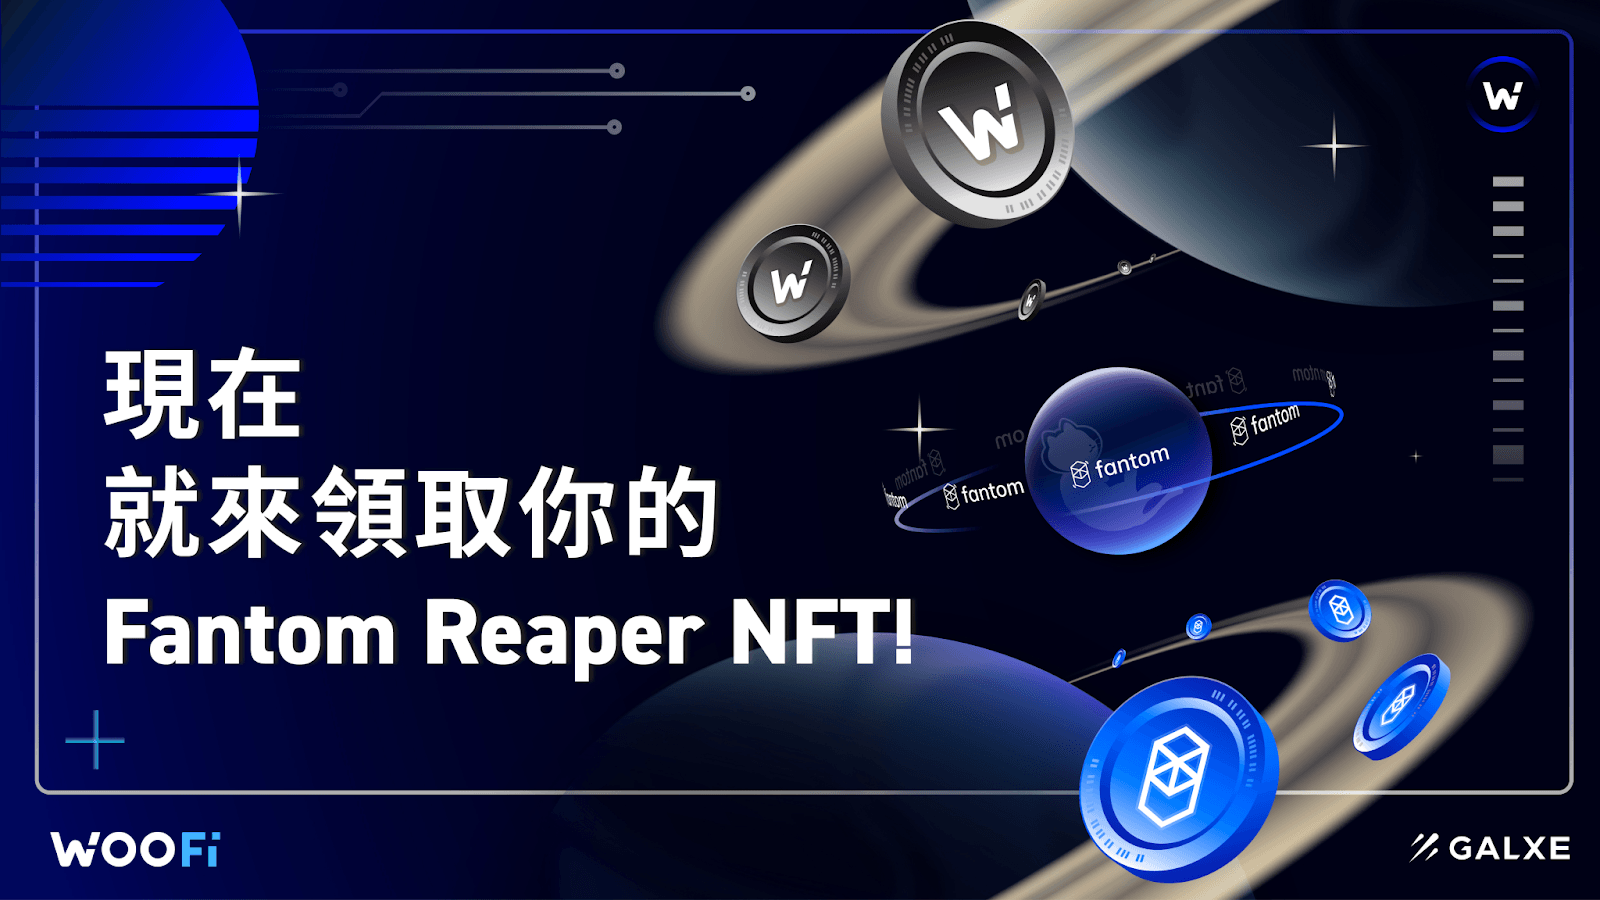 現在就來領取你的 Fantom Reaper NFT！